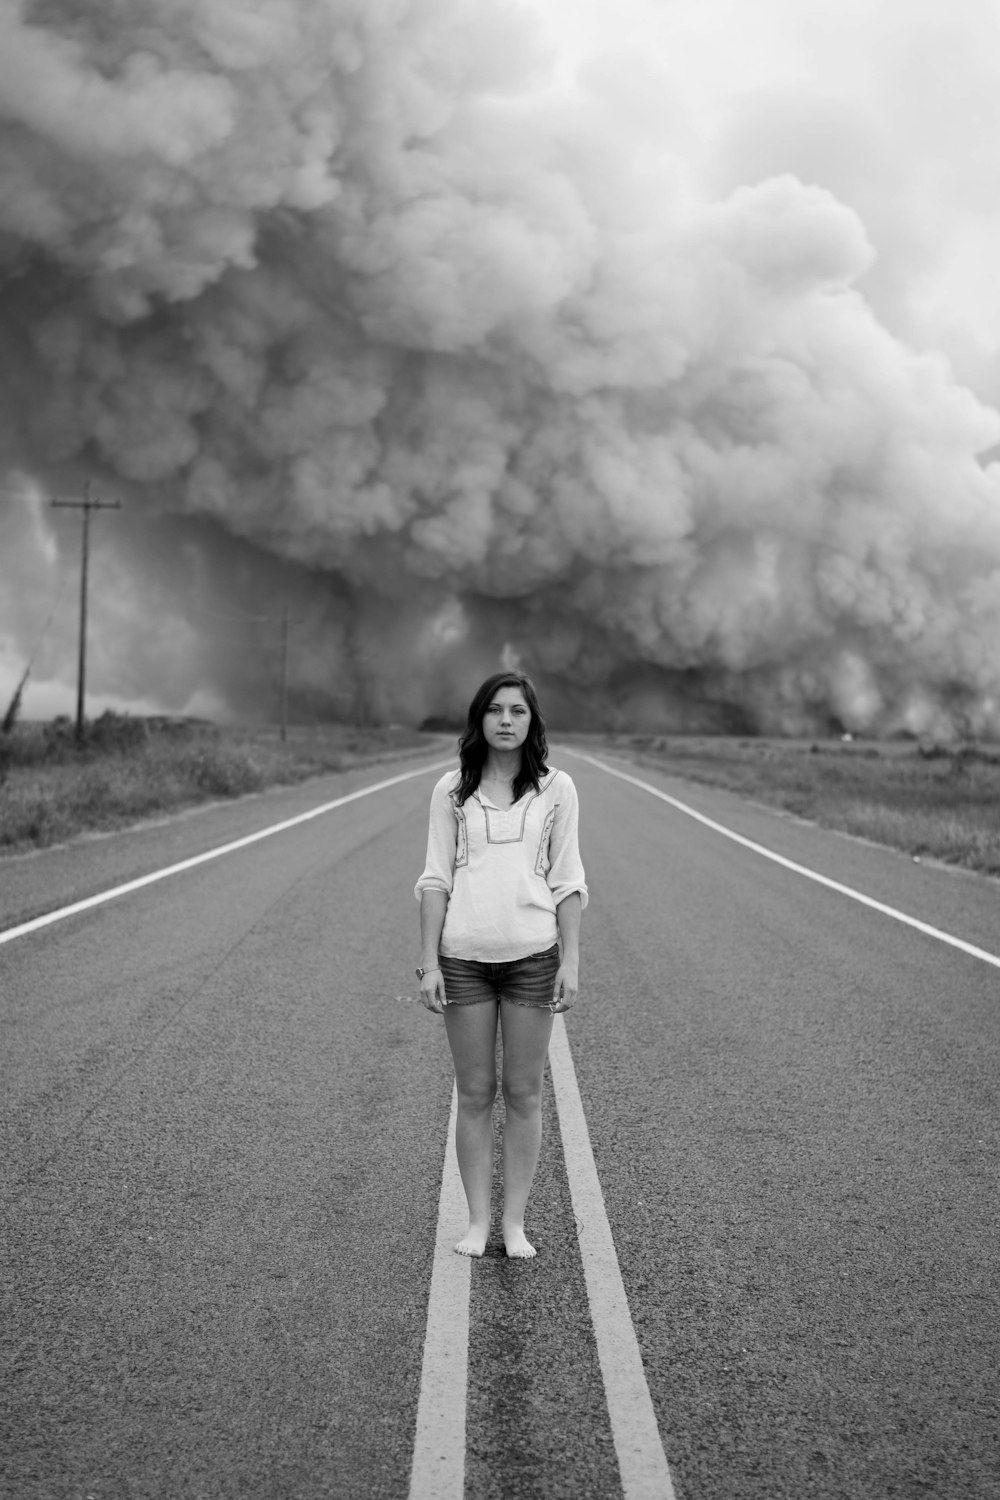 도로 한가운데에 서 있는 여자의 회색조 사진